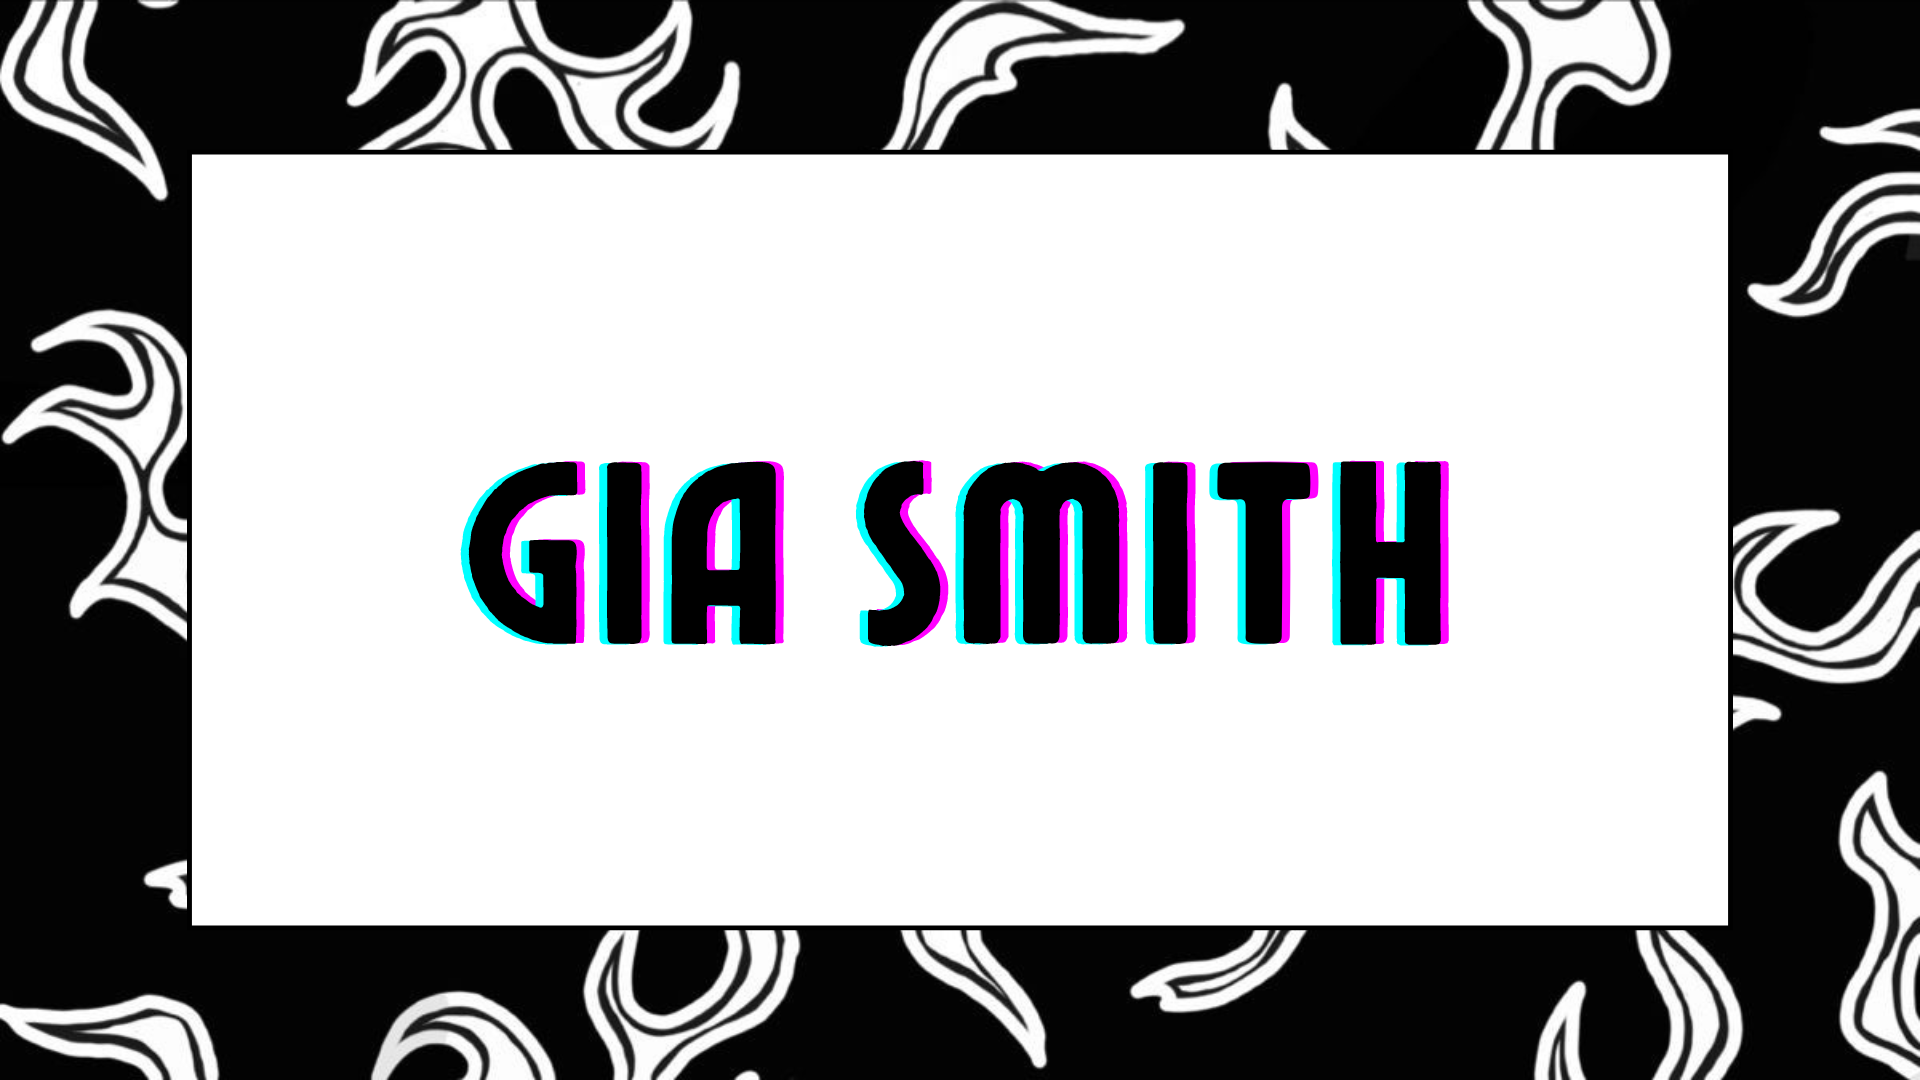 GiaSmith-1 about me image: 1